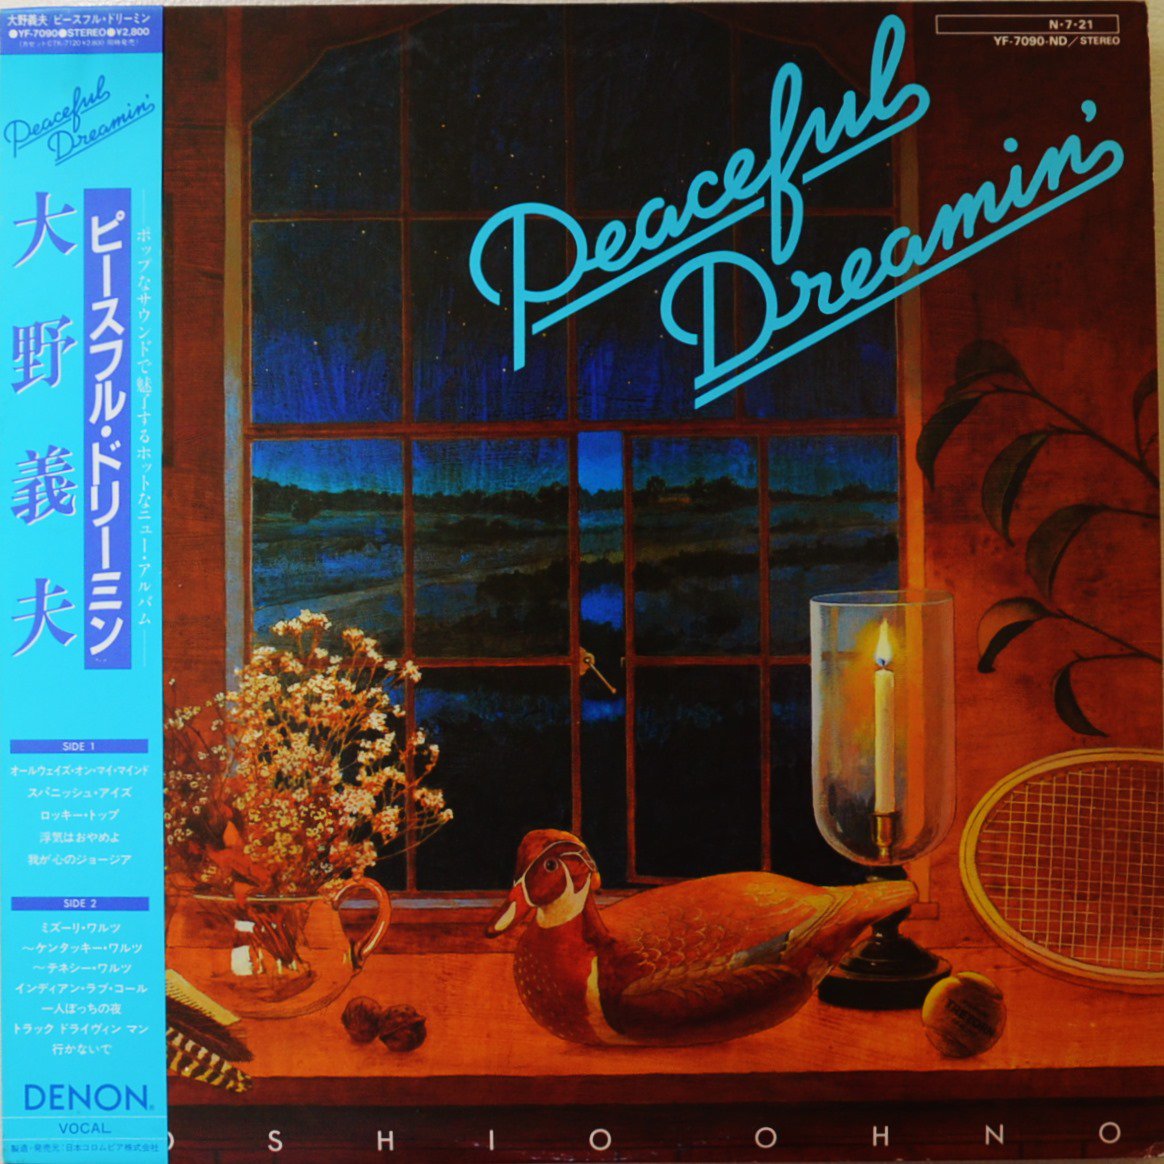 大野義夫 YOSHIO OHNO /  ピースフル・ドリーミン PEACEFUL DREAMIN' (LP)